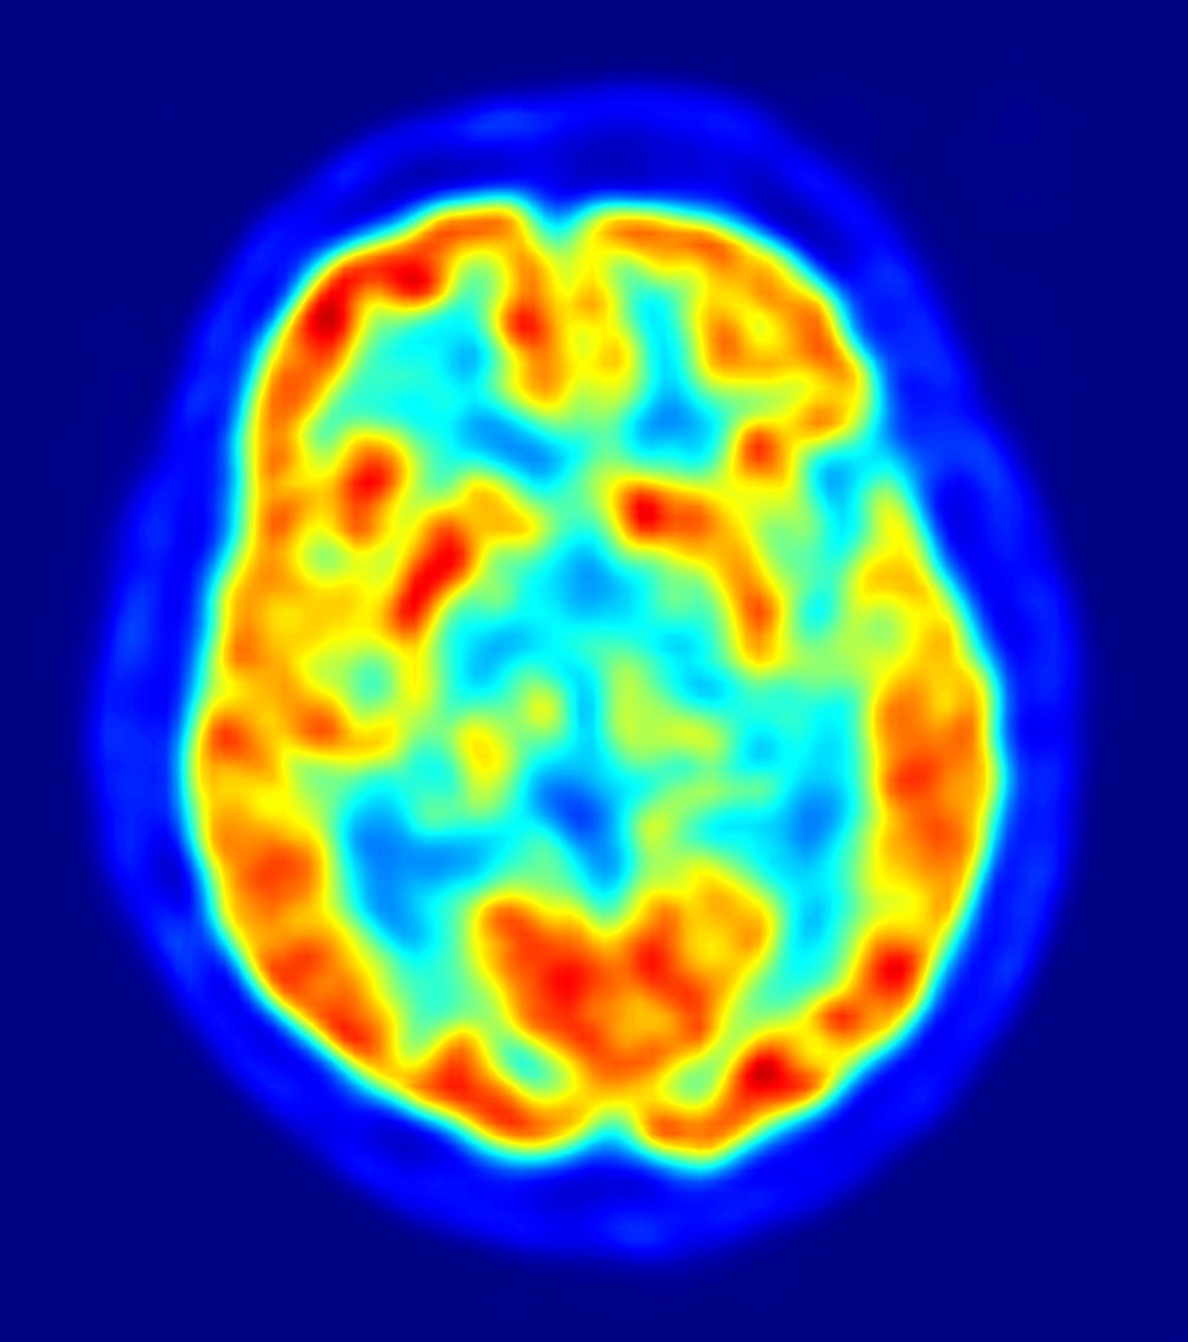 EEUU está cerca de conseguir recuperar la memoria en pacientes con Alzheimer